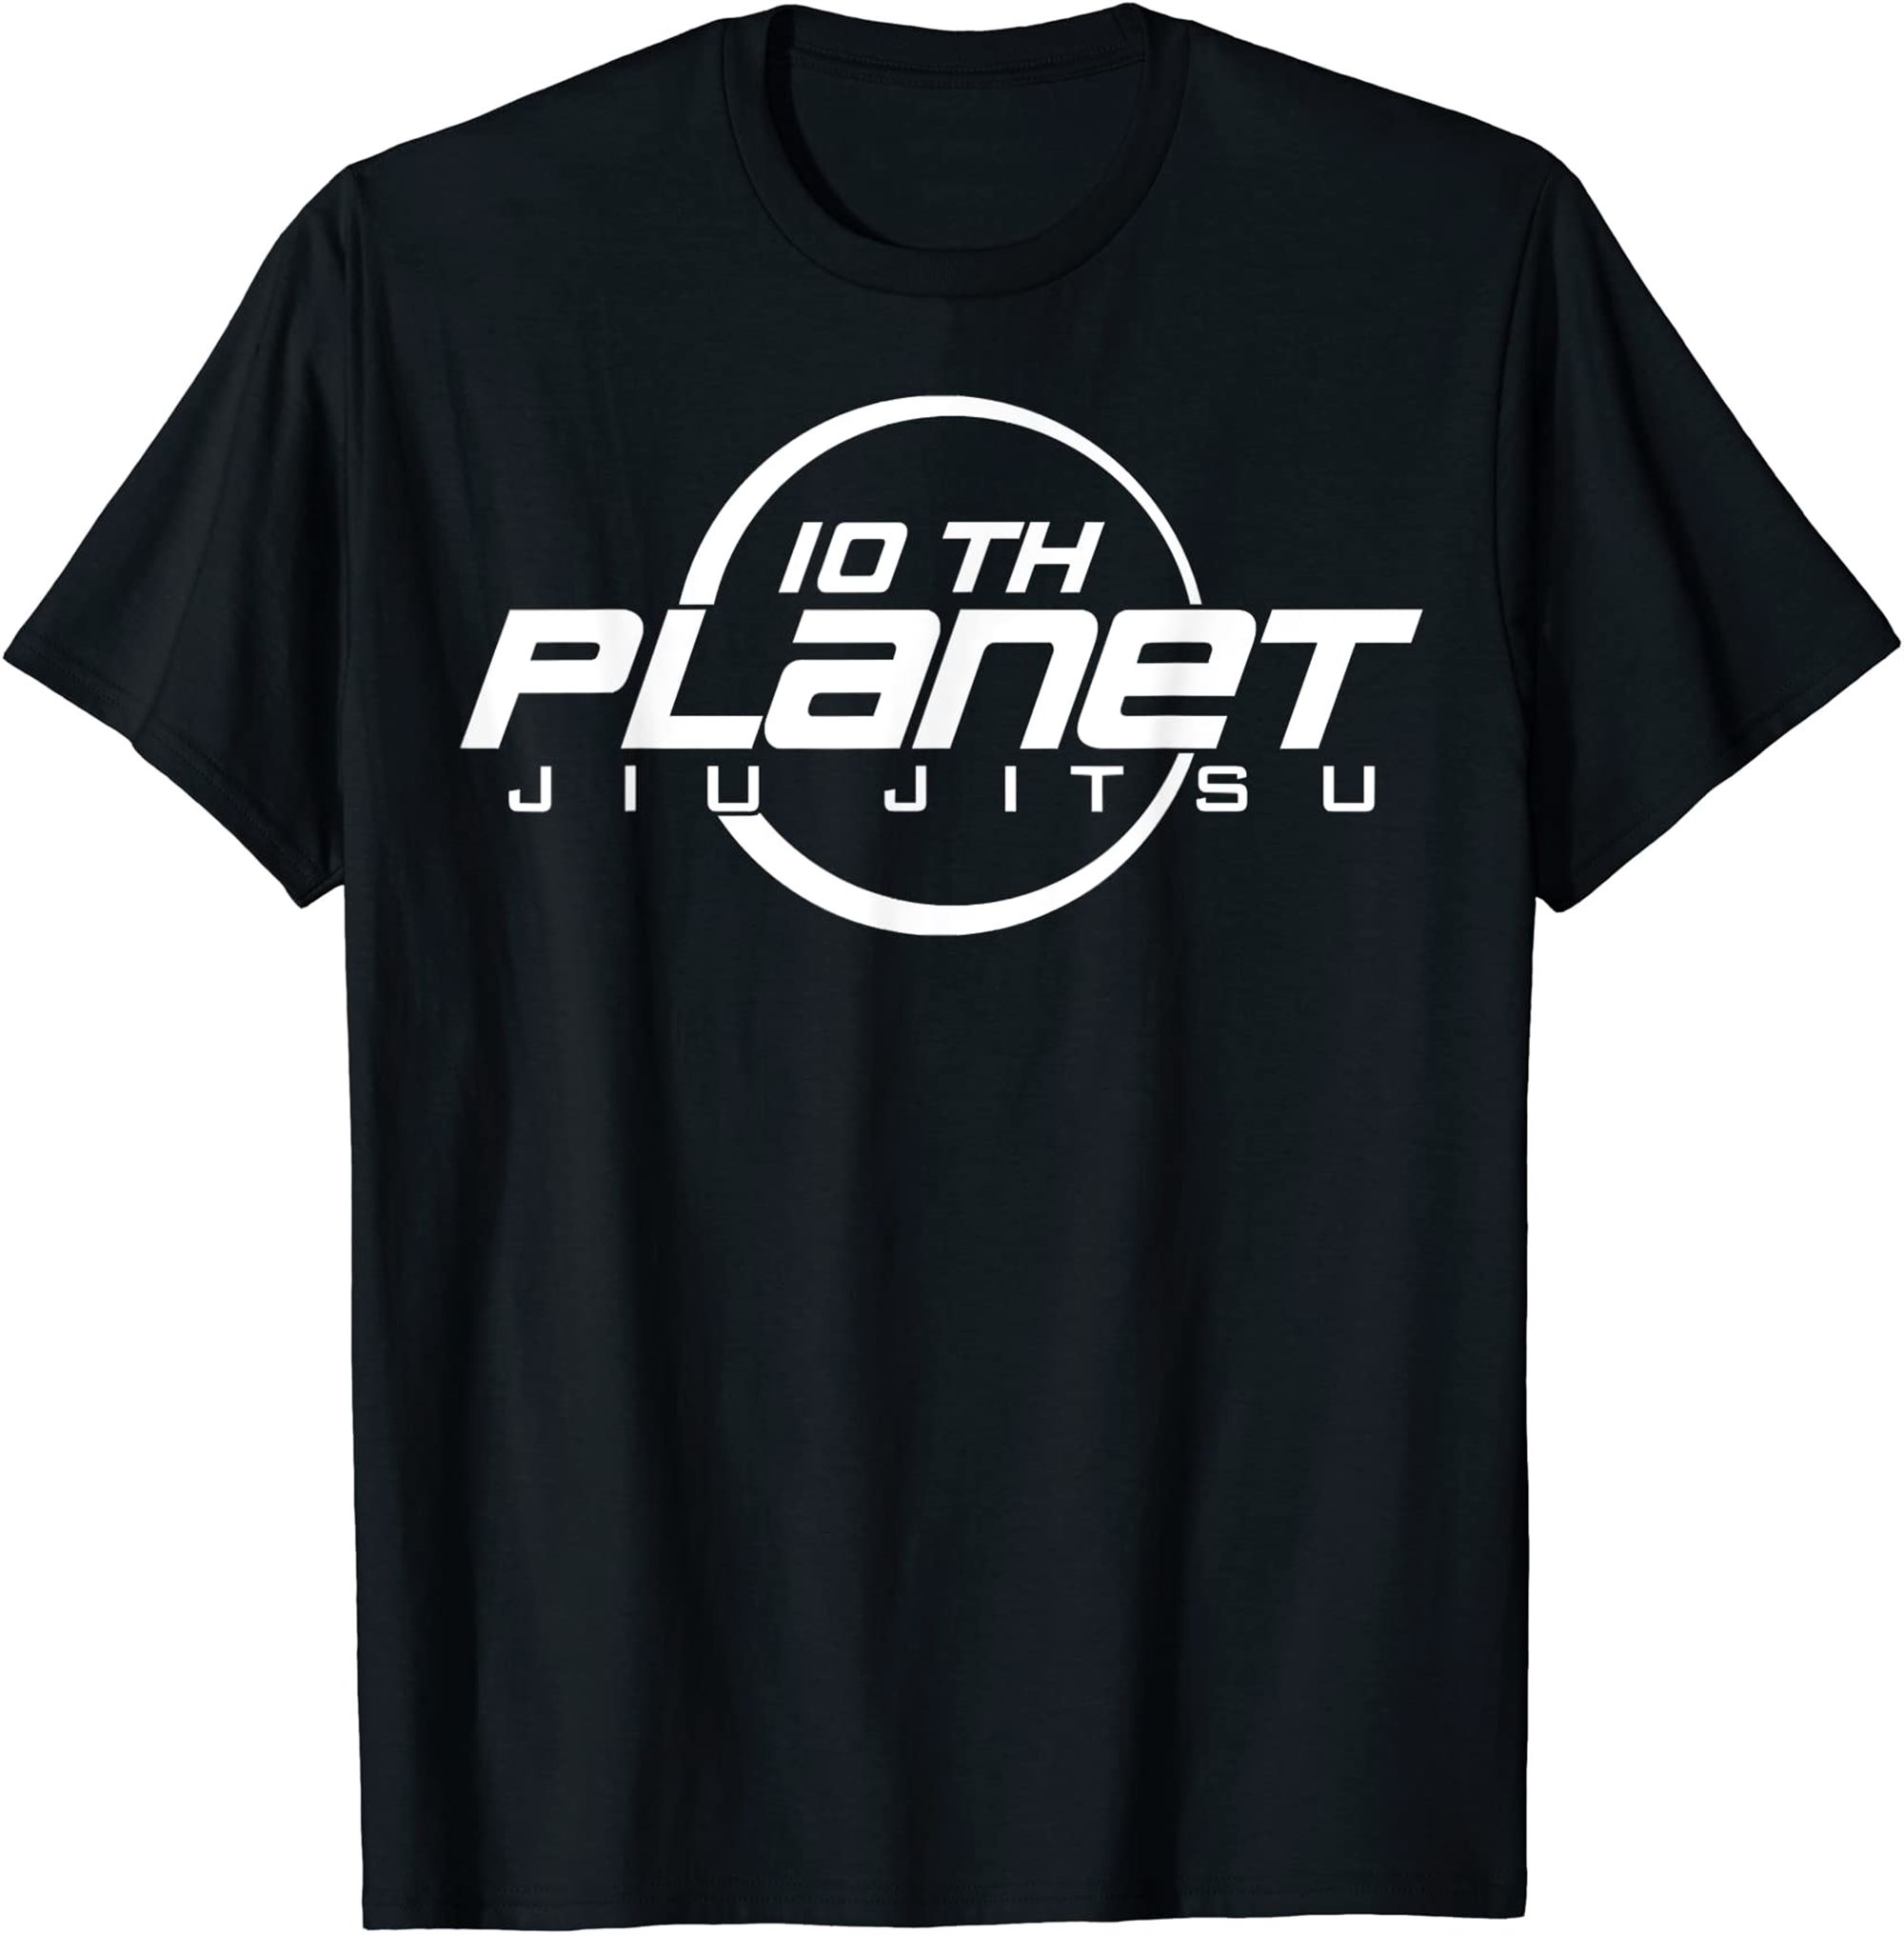 10th Planets Jiu Jitsu Tshirt Plus Size Up To 5xl